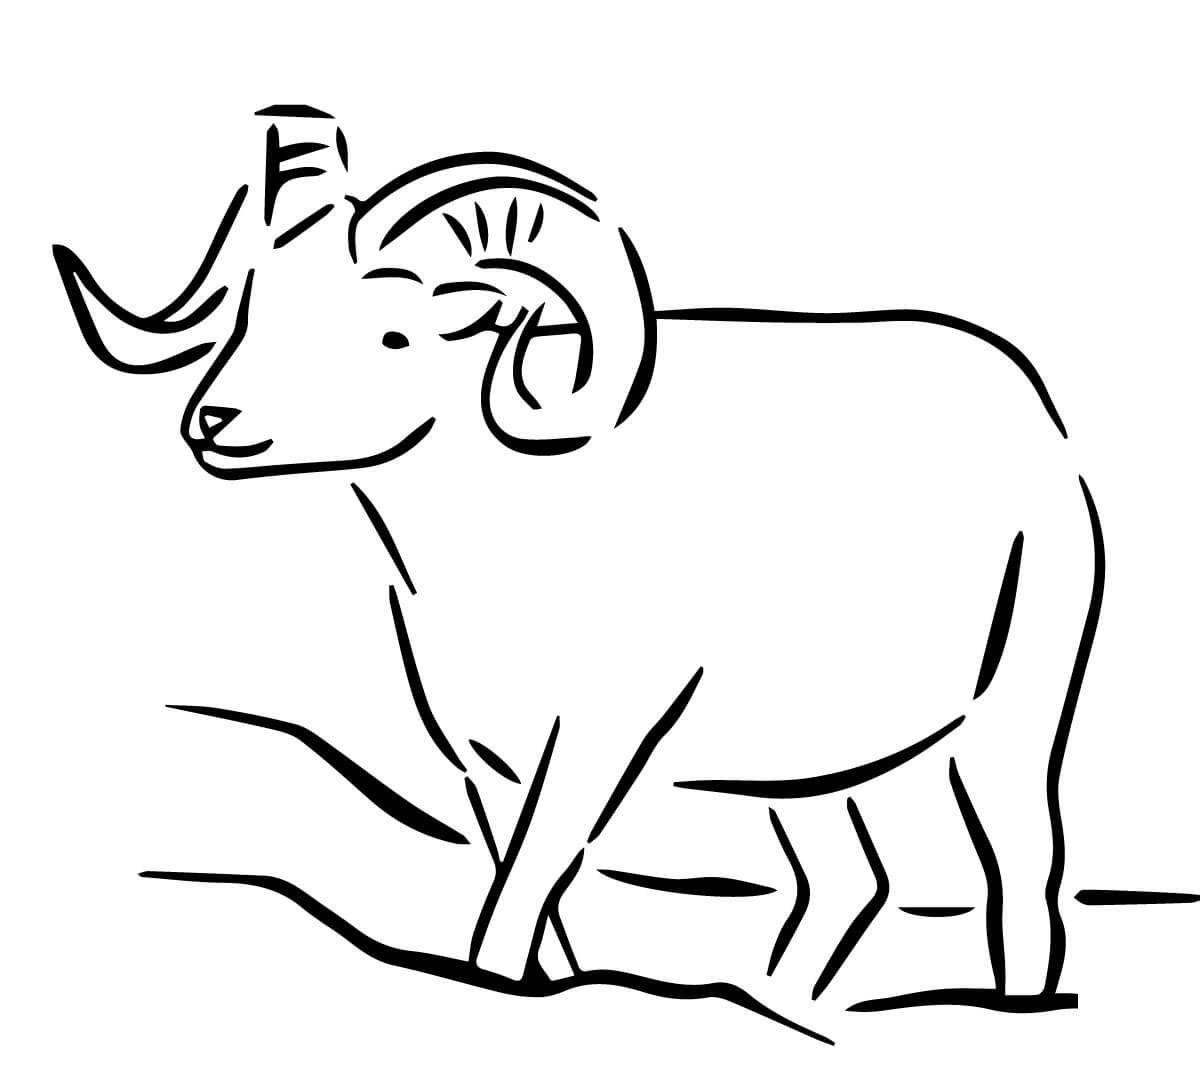   Рисунок козла с рогами